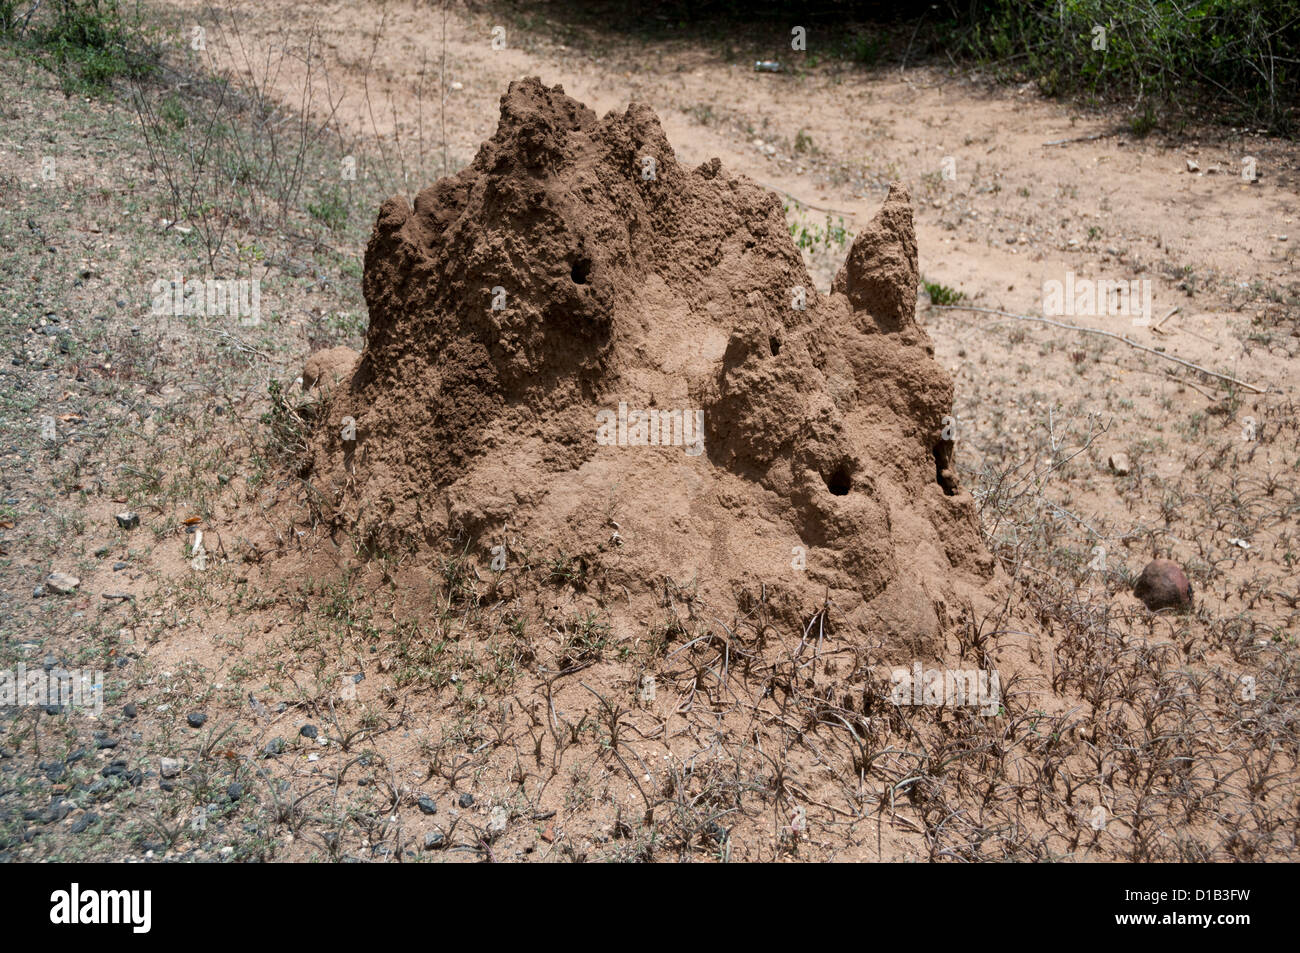 Ant hills, Termite mound, Kerala, India Stock Photo